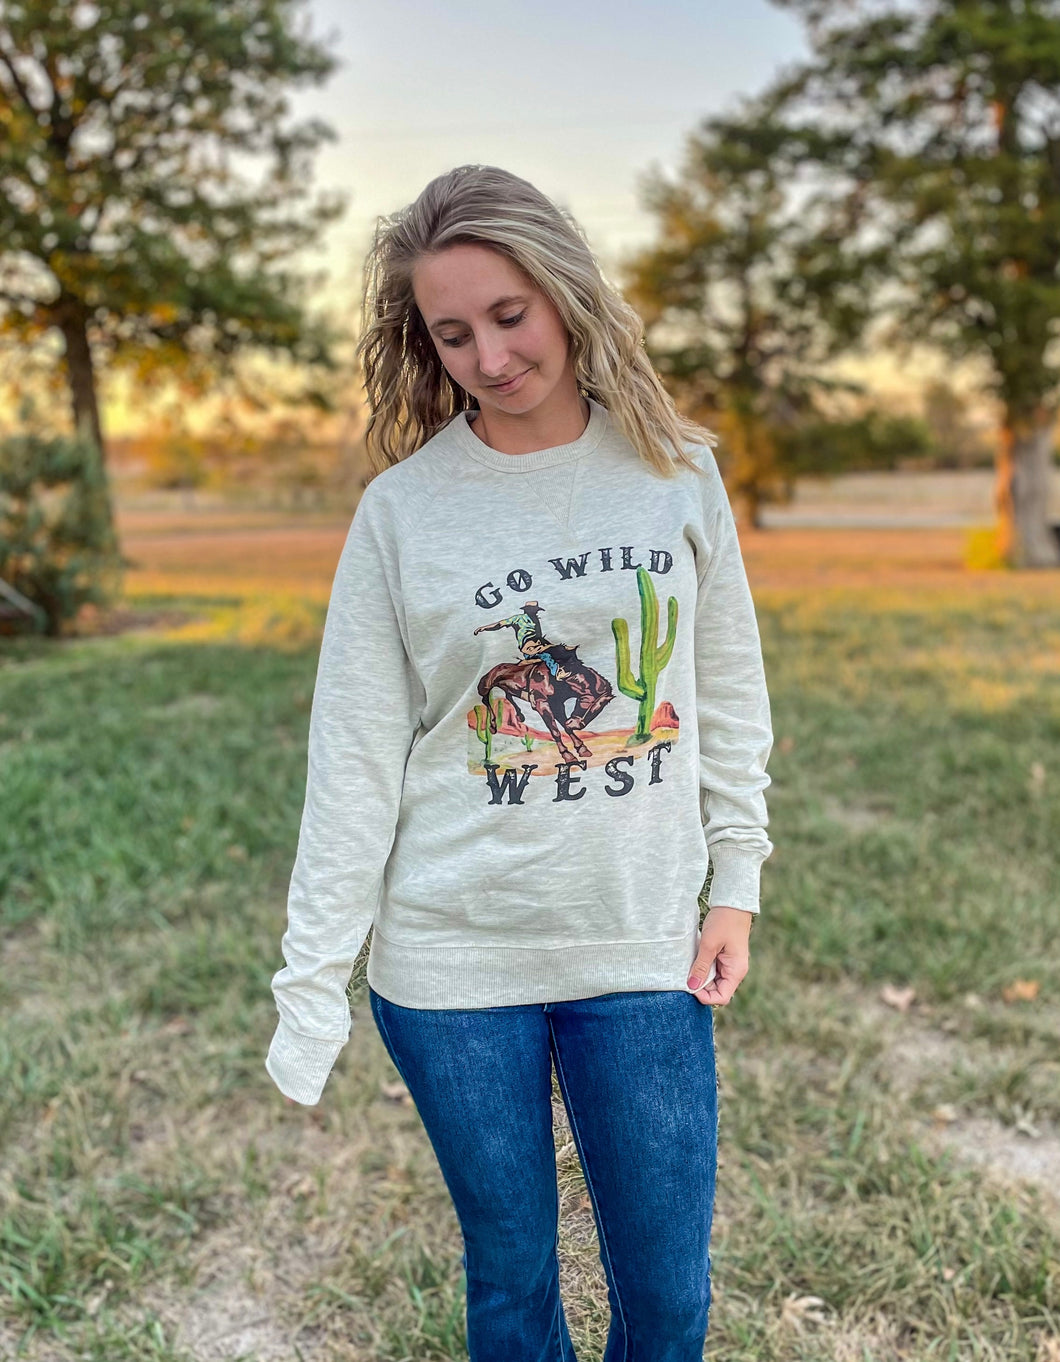 Go Wild West Sweatshirt